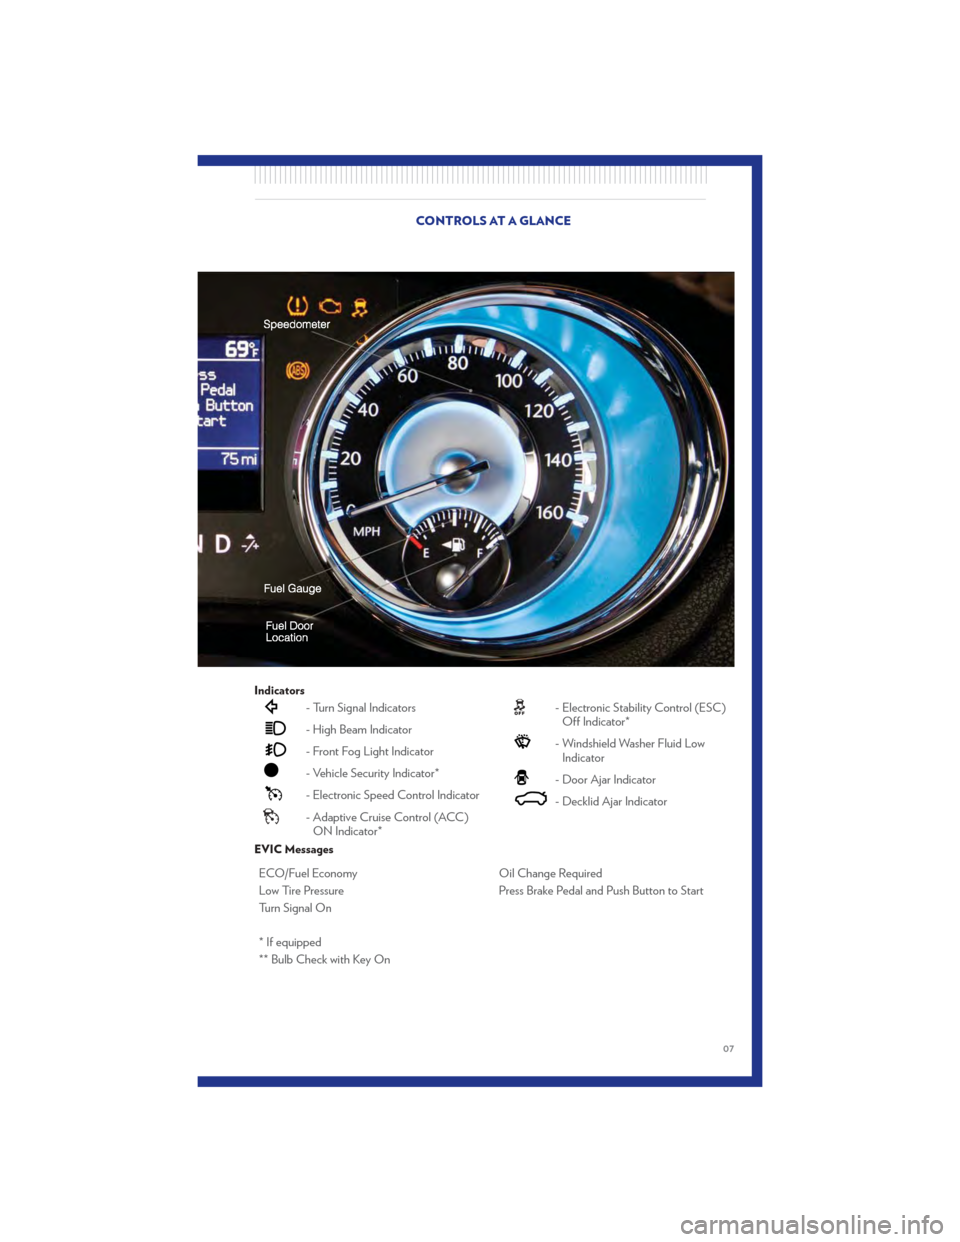 CHRYSLER 300 2011 2.G User Guide Indicators
- Turn Signal Indicators
- High Beam Indicator
- Front Fog Light Indicator
- Vehicle Security Indicator*
- Electronic Speed Control Indicator
- Adaptive Cruise Control (ACC)ON Indicator*
- 